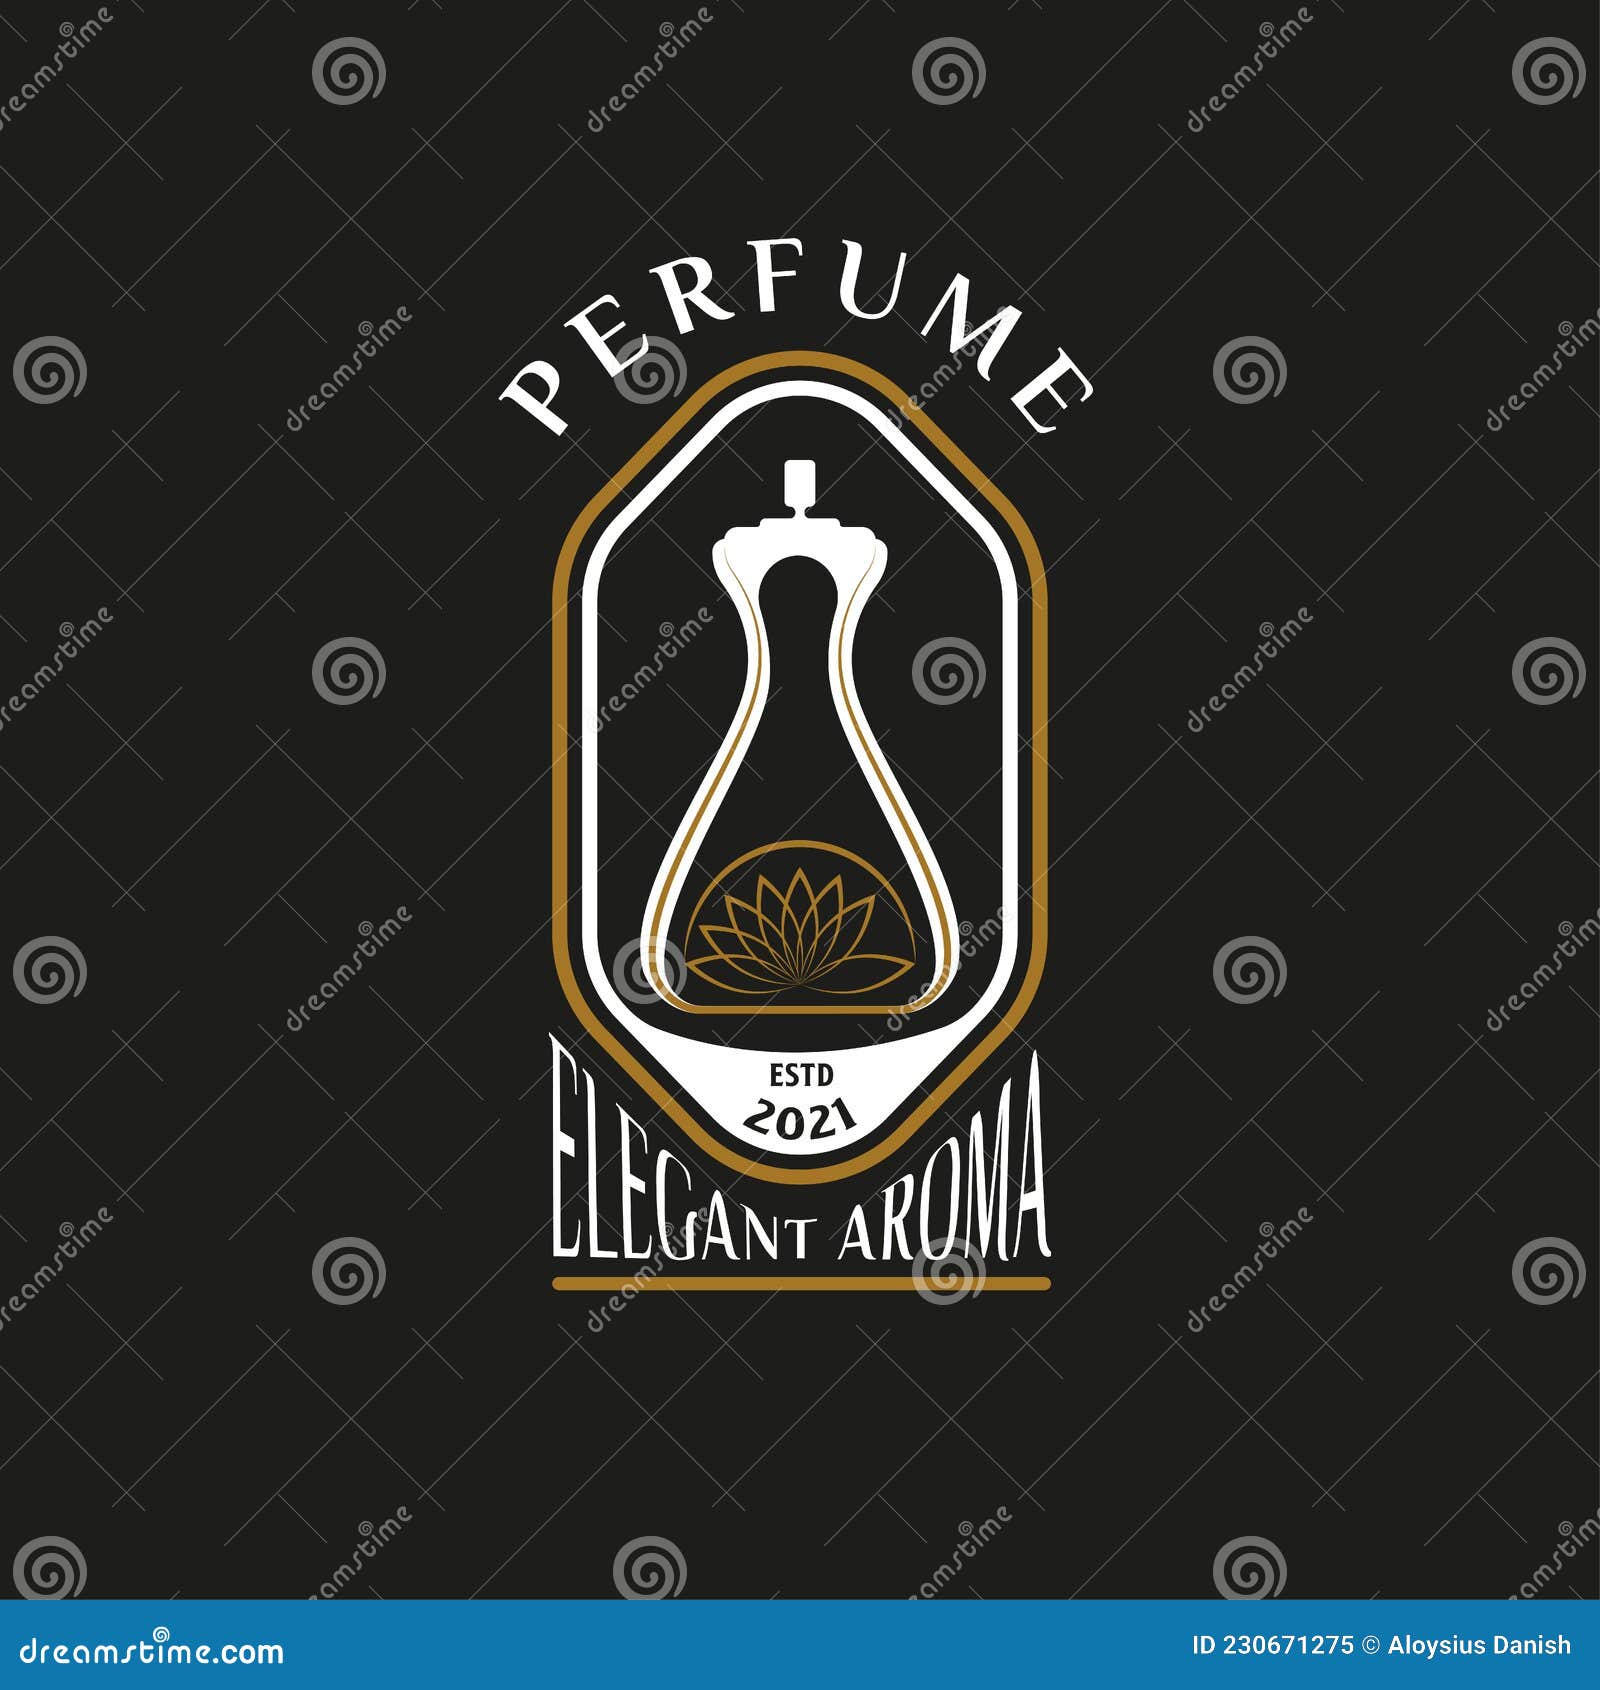 Premium Vector, Luxury perfume logo with bottle